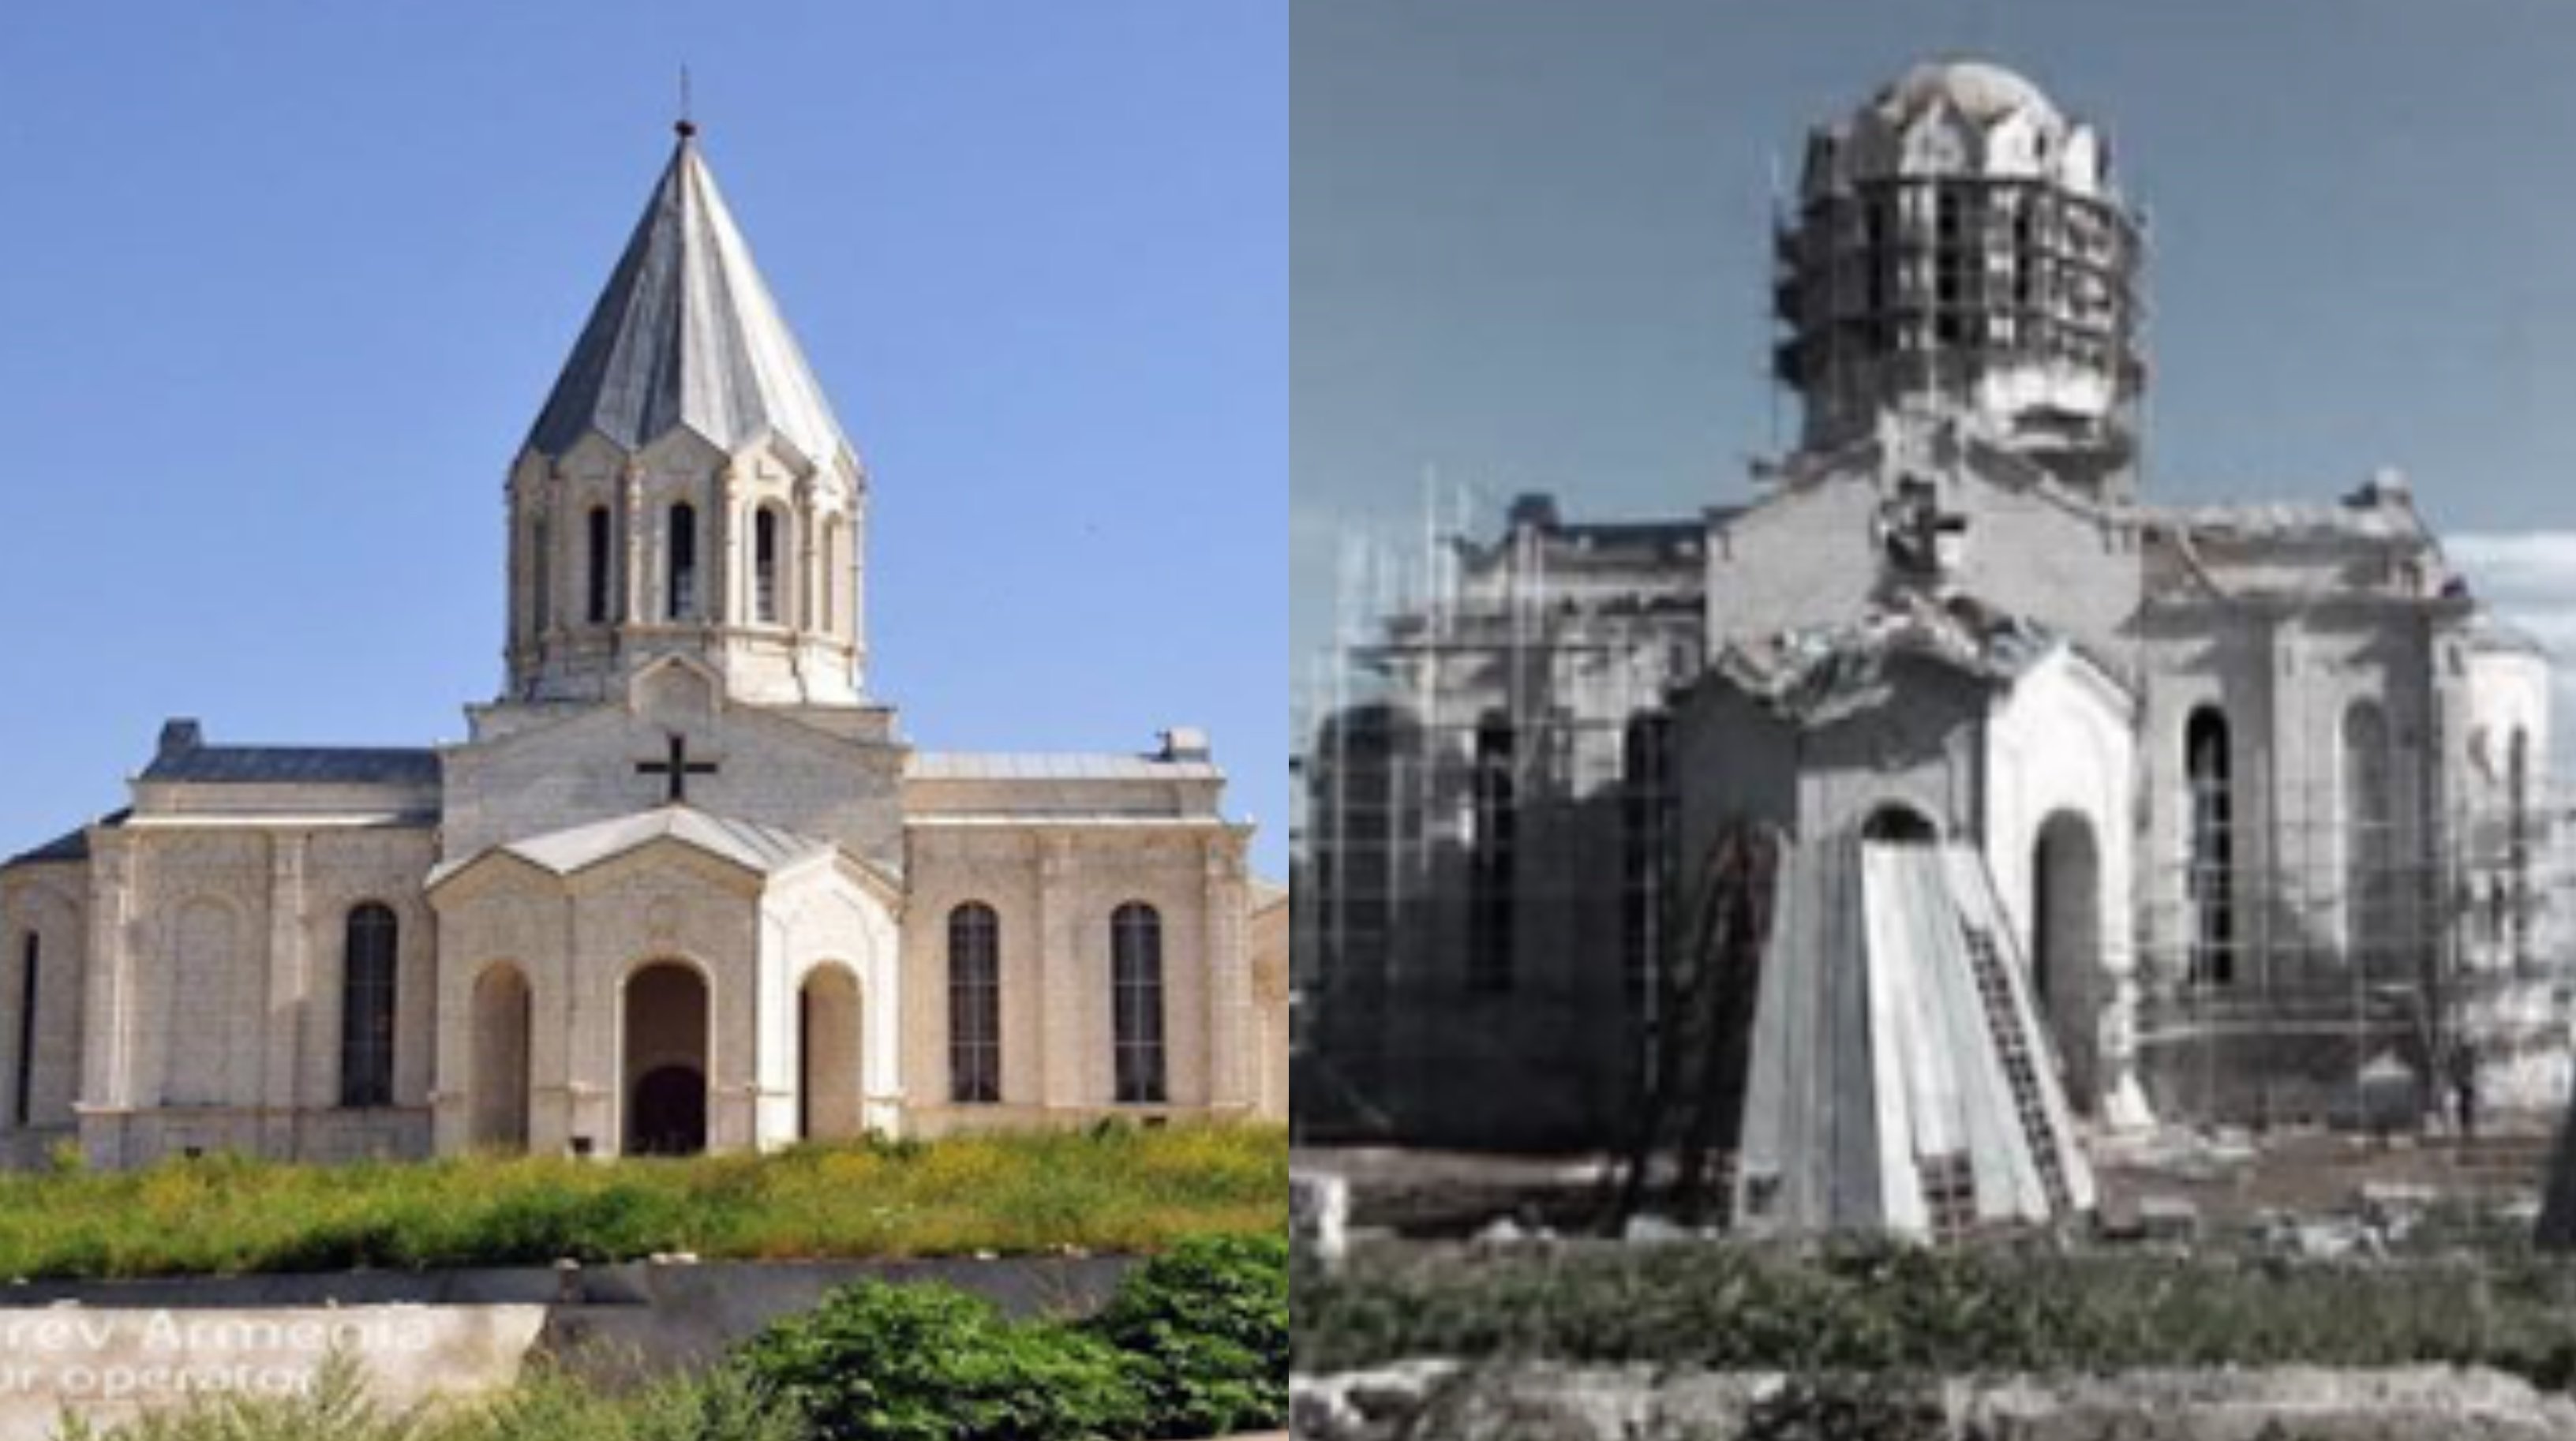 Դատապարտել հայկական կրոնական, մշակութային և պատմական վայրերի և հուշարձանների դիտավորյալ ոչնչացումը․ կոչ միջազգային դերակատարներին